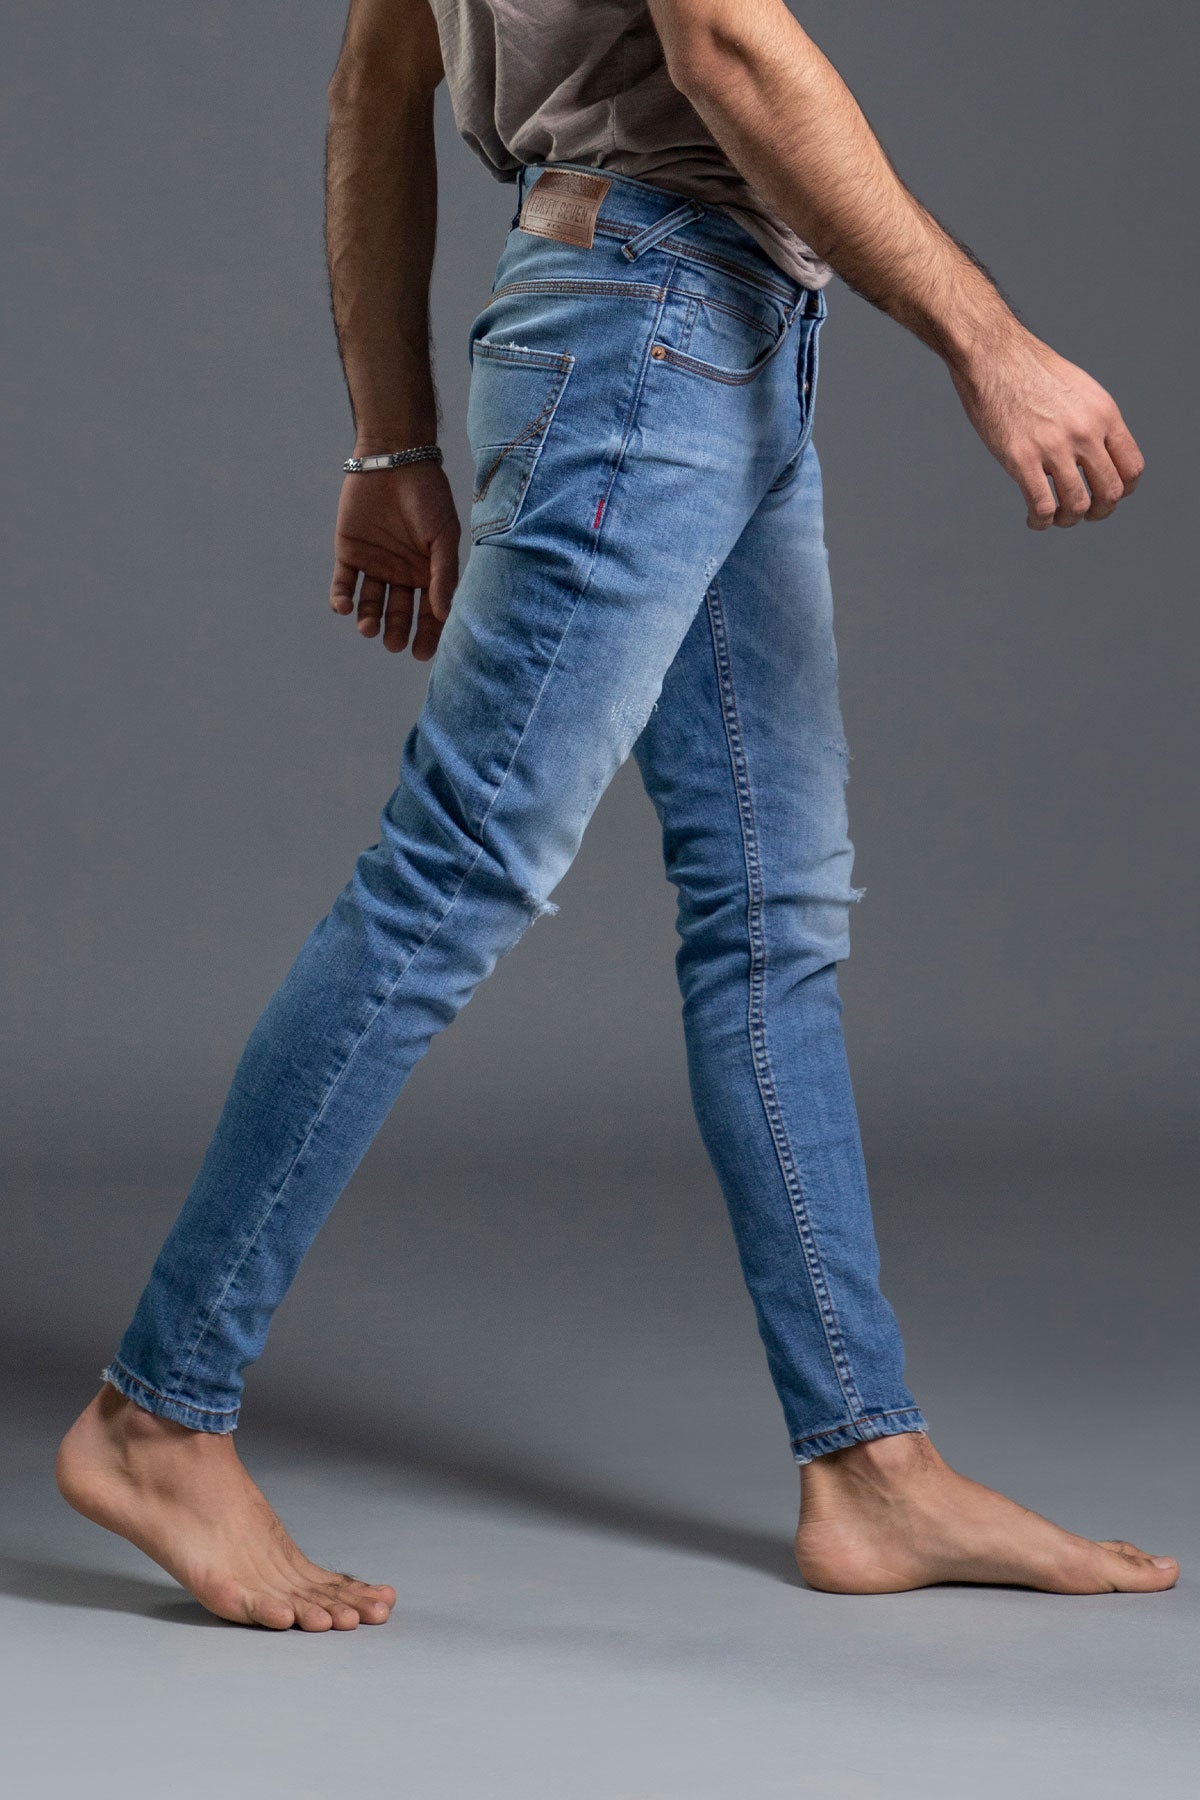 Buy the Best Men's Denim Jeans in Pakistan Online - 1947 Denim Co